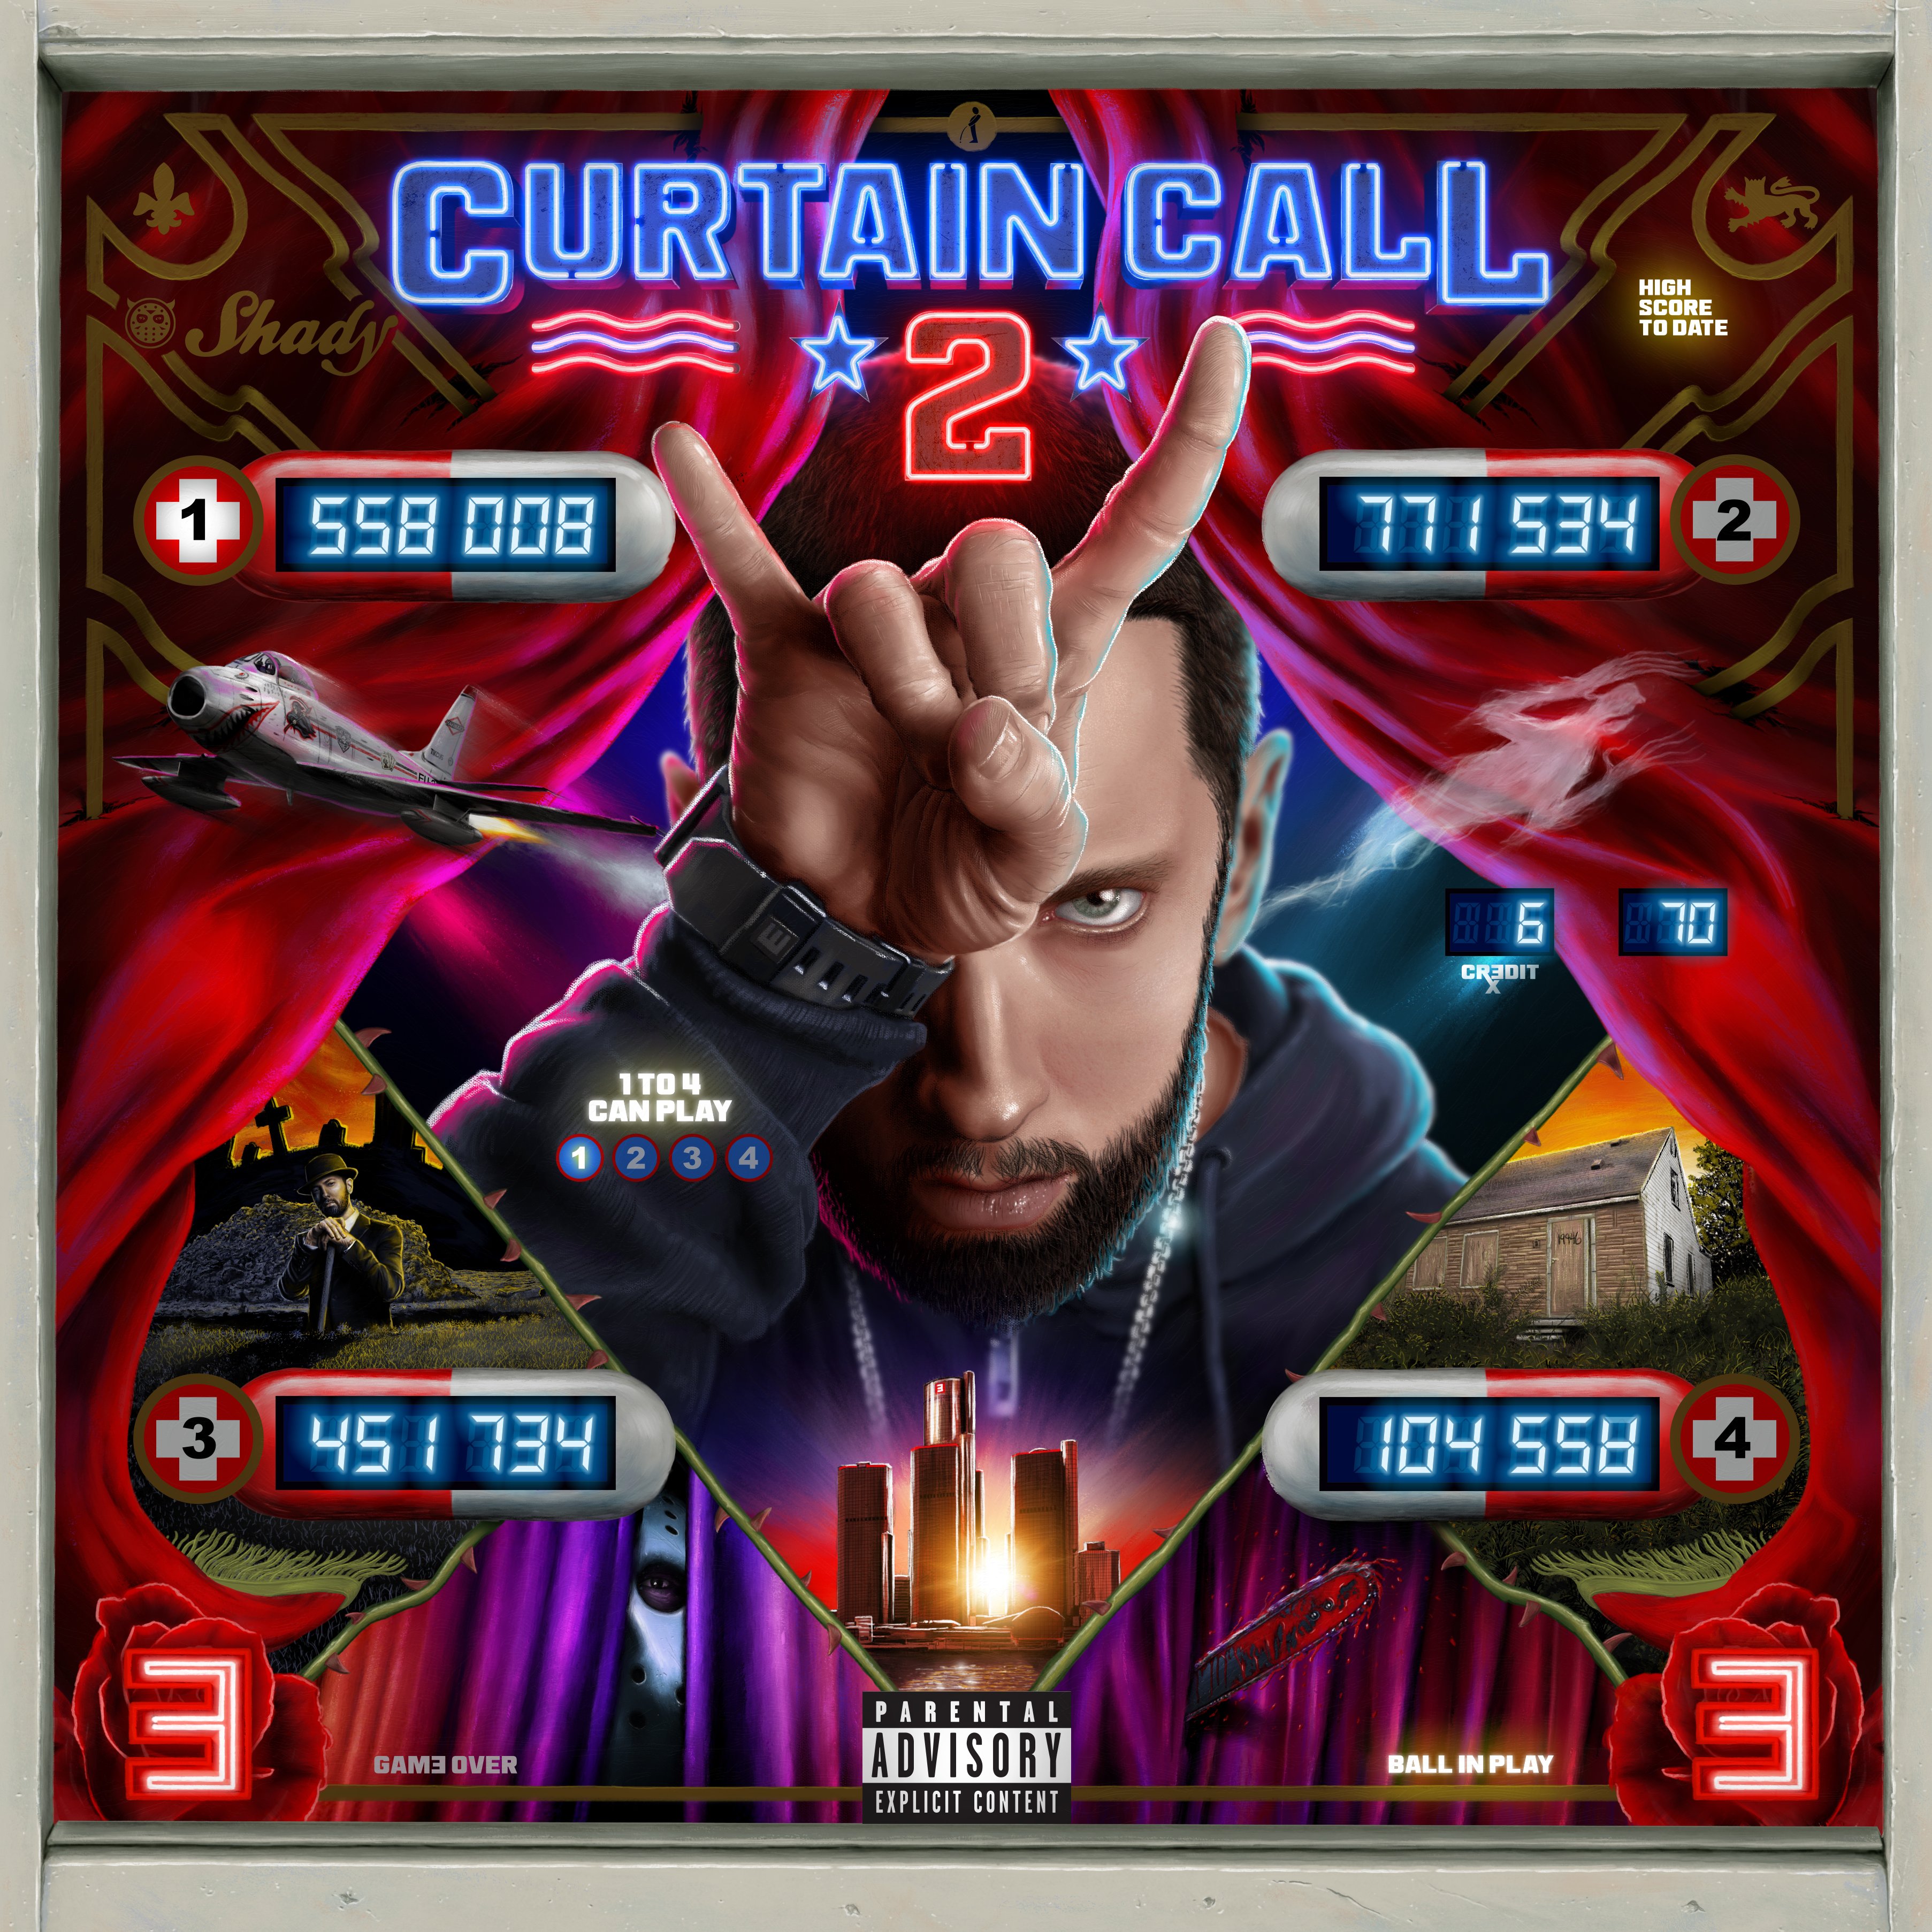 promo : Eminem's Curtain Call 2 album